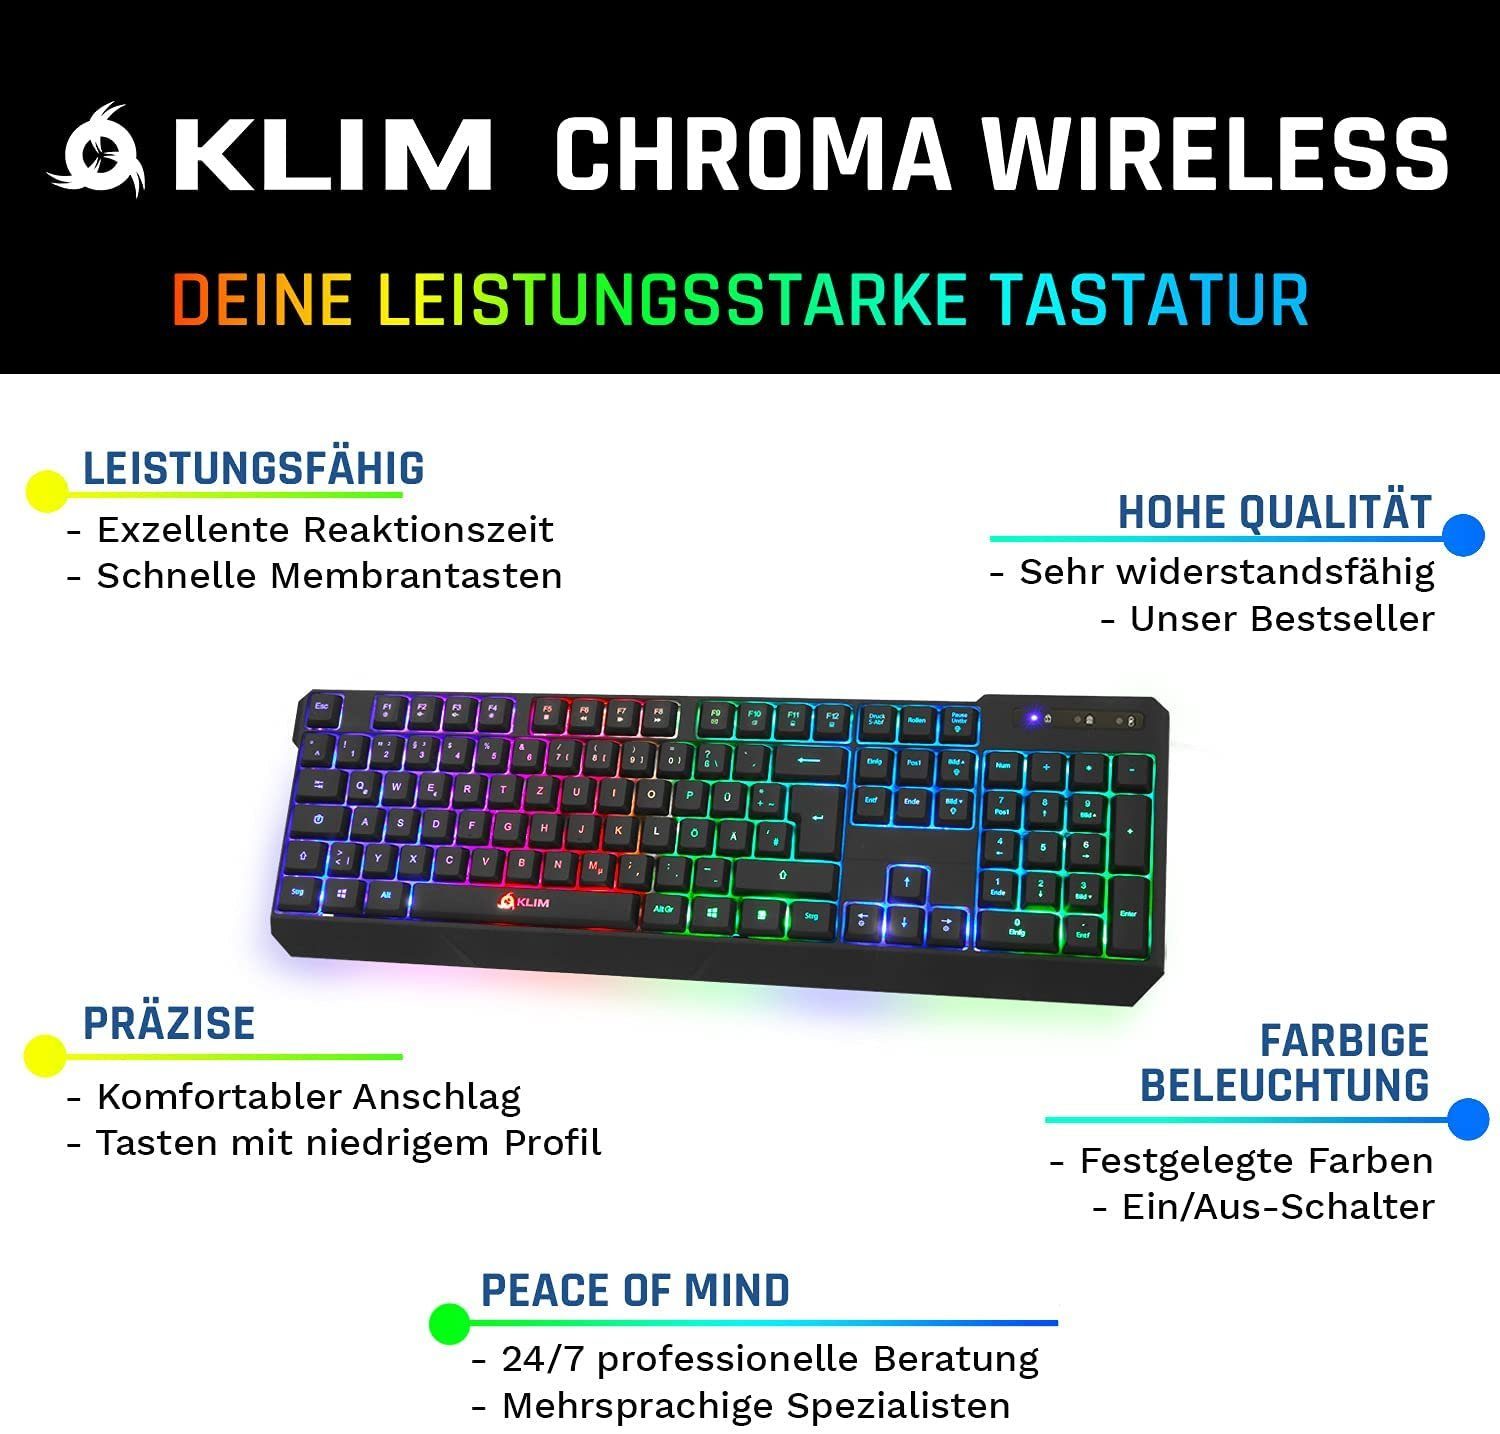 KLIM Chroma (ergonomisches, Tasten, wasserfestes Gaming hintergrundbeleuchtete Tastenbelegung) Deutsche langlebiges Gaming-Tastatur und Anti Ghosting Keyboard, wireless Gaming